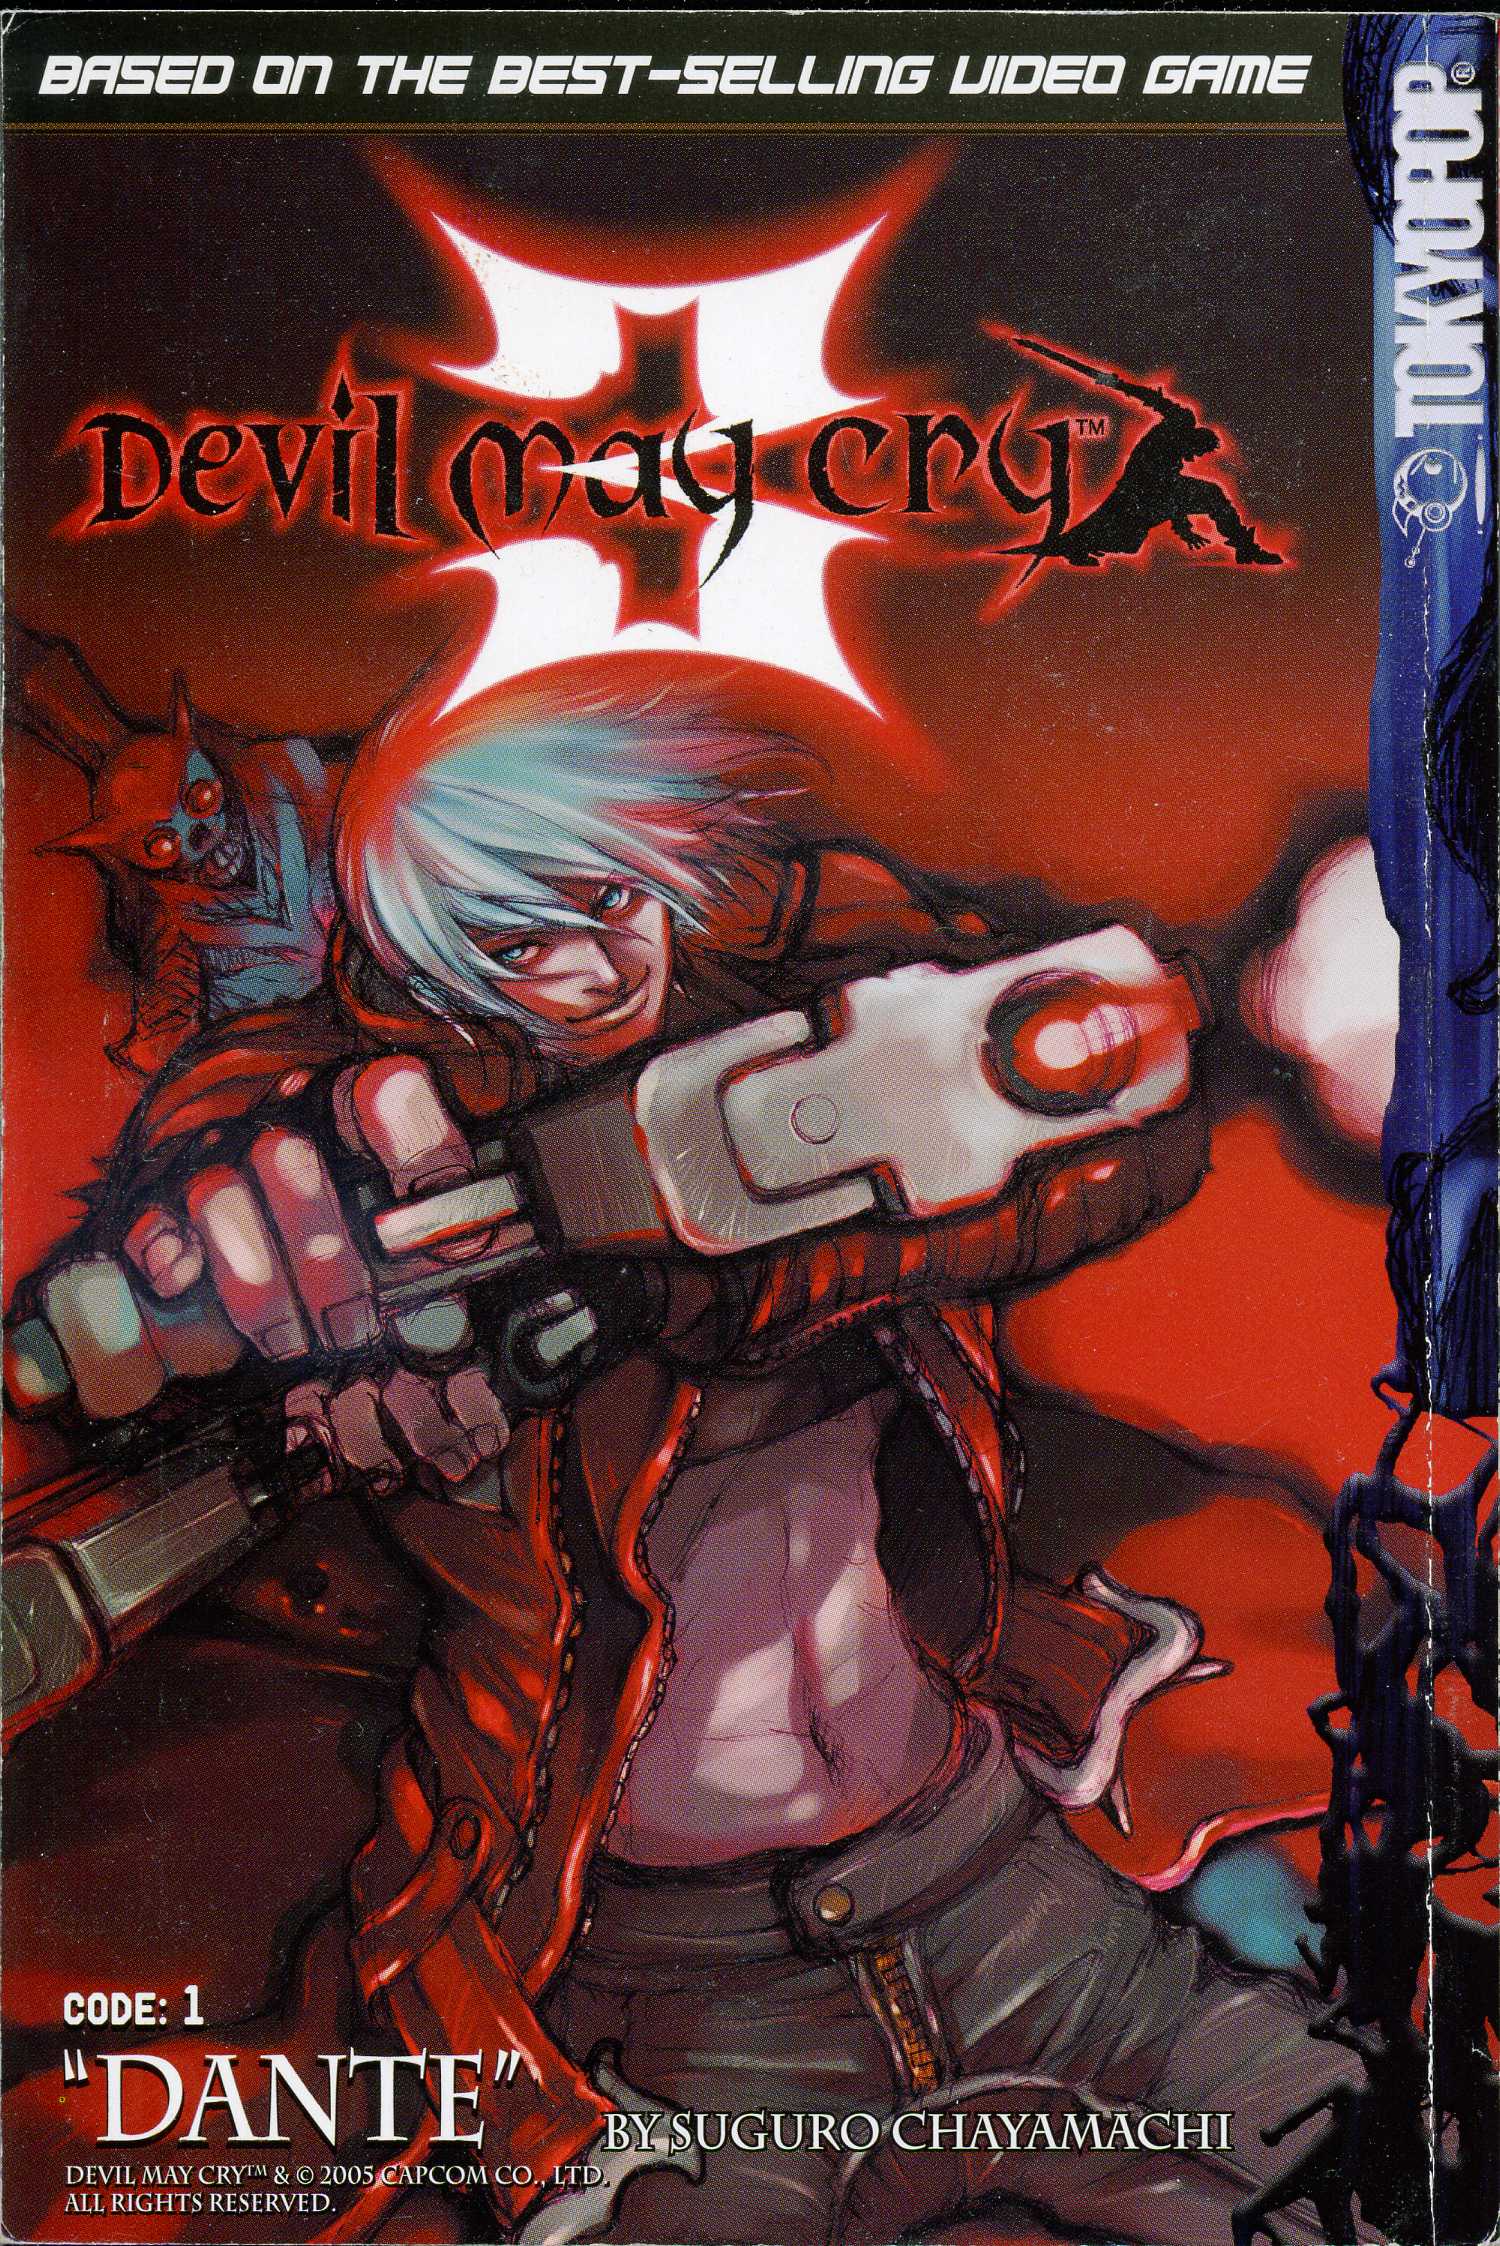 Devil+may+cry+anime+soundtrack